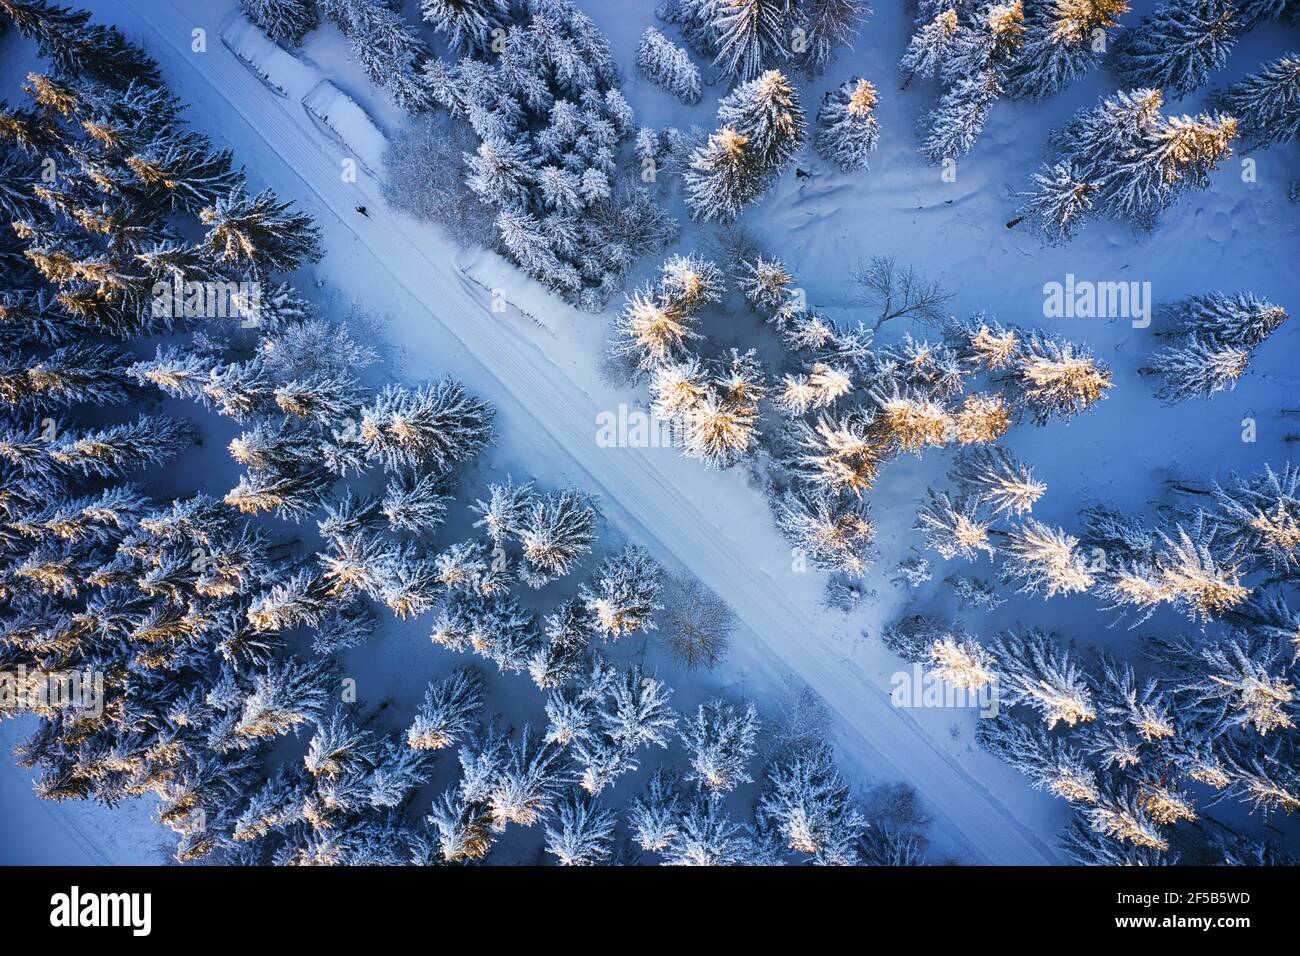 Luftaufnahme von Skilangläufern auf dem winterlichen Hohen Meißner Stock Photo